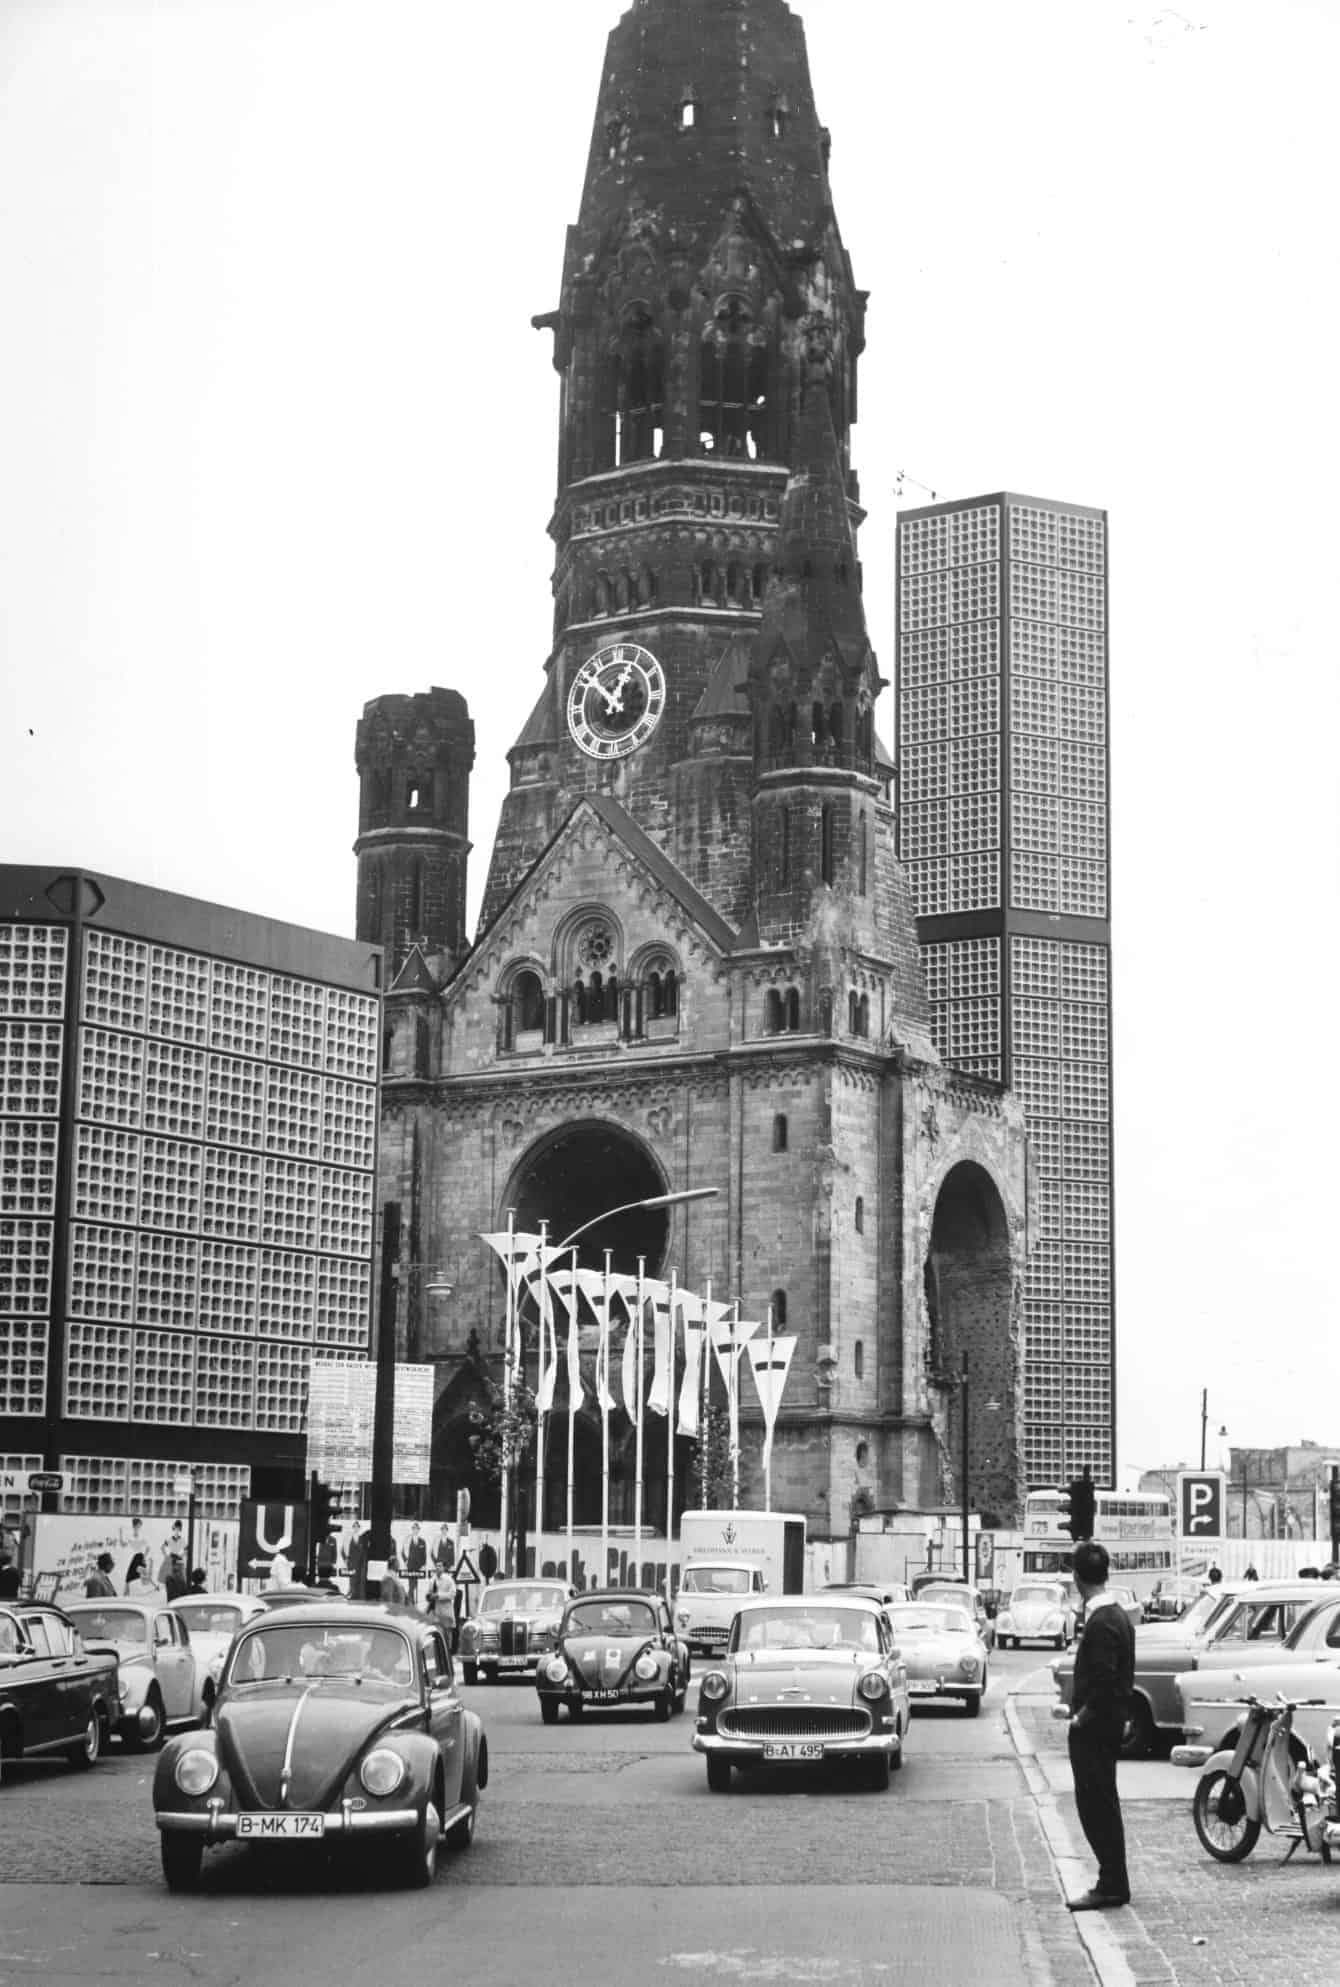 Schwarz-weiß Aufnahme der zerstörten Kaiser-Wilhelm-Gedächtniskirche, im Hintergrund der moderne Neubau, vor der Kirche viele Kirchentagsfahnen und Autos, z.B. VW Käfer